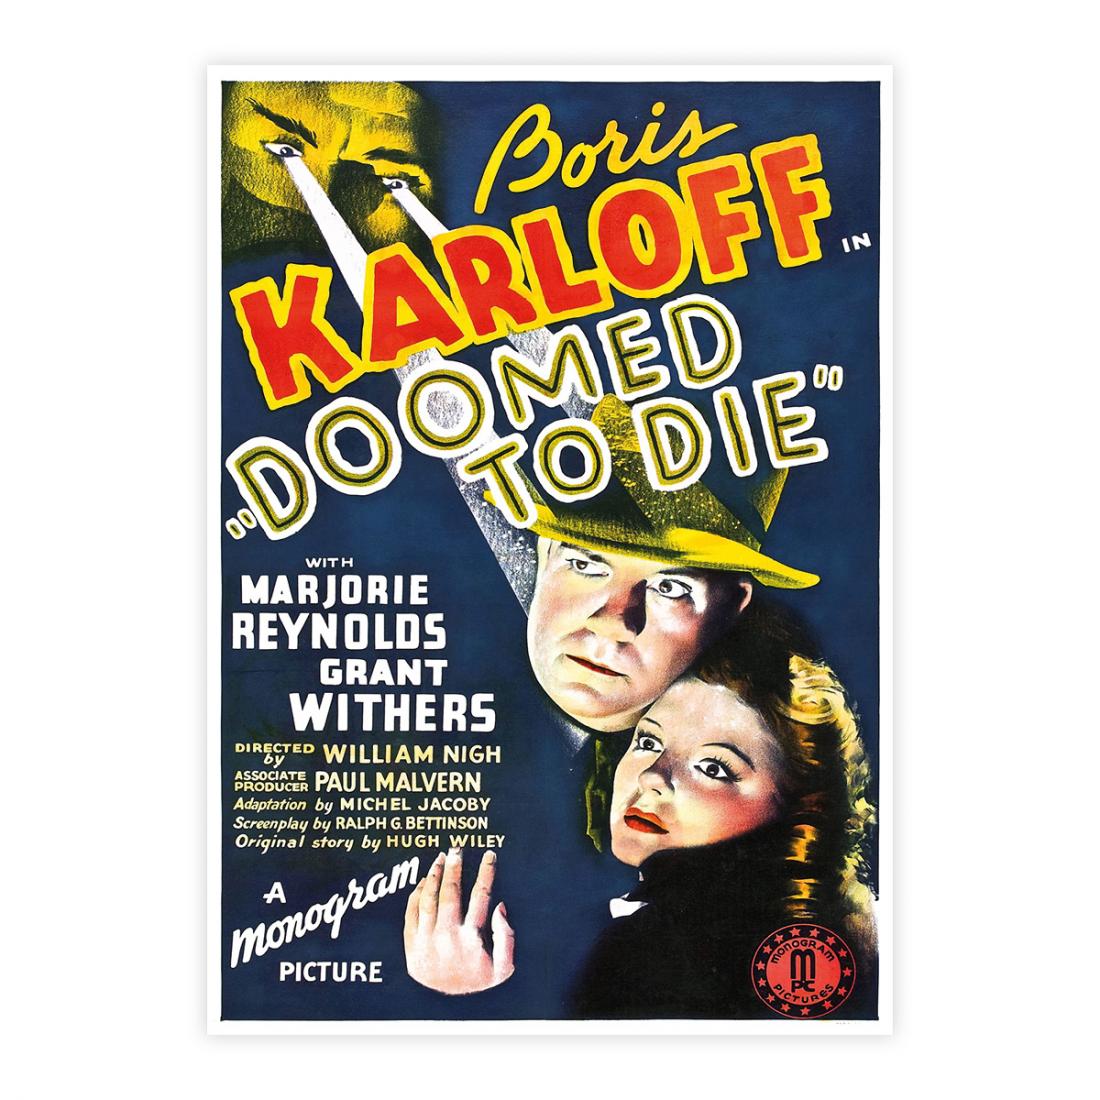 Boris Karloff - Doomed to die